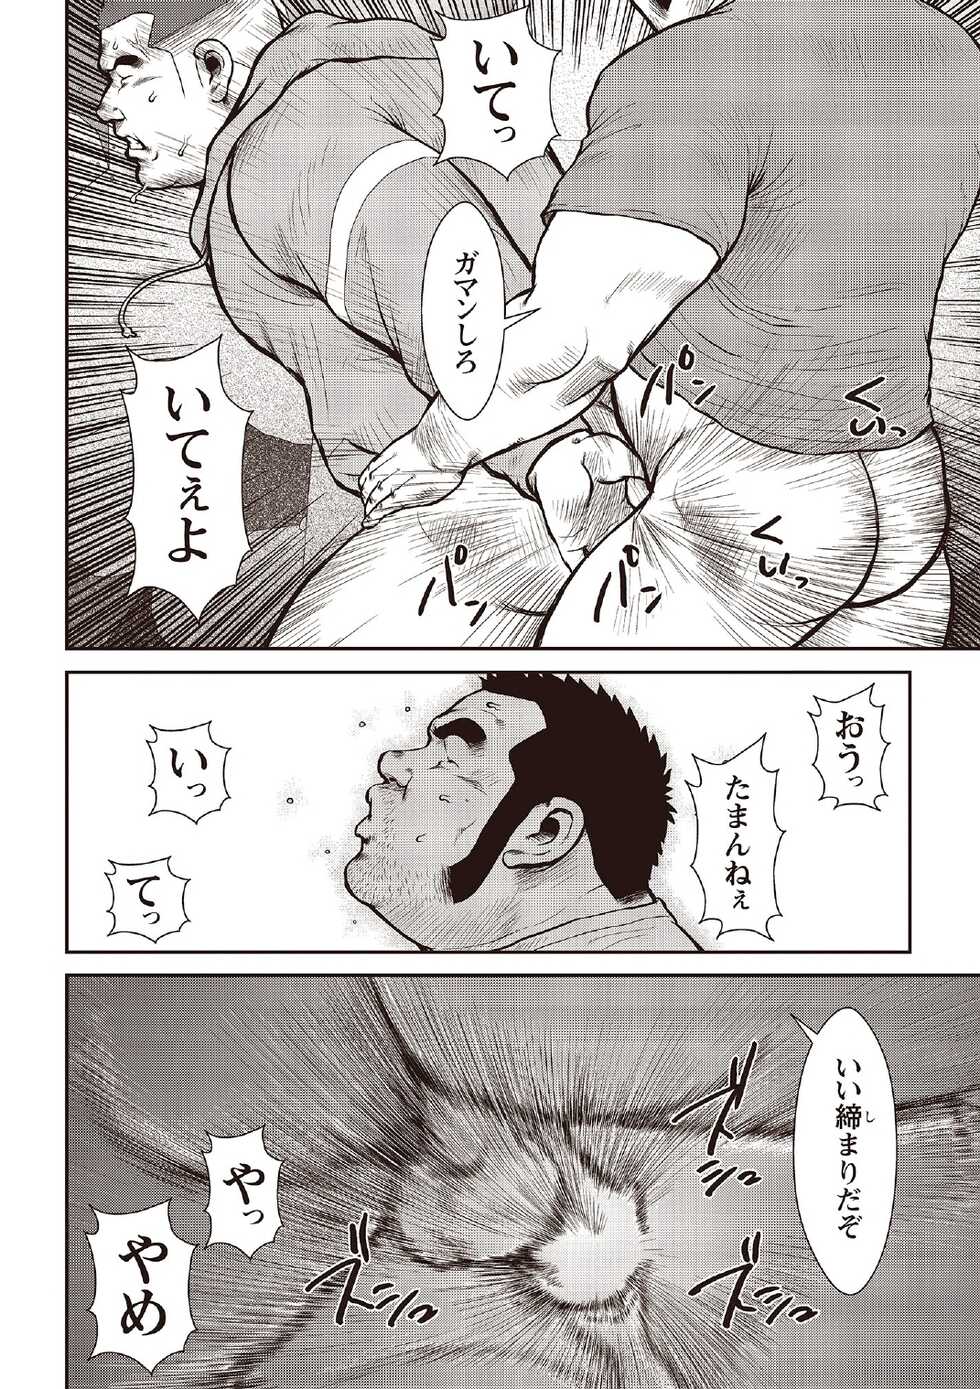 [Ebisubashi Seizou] Ebisubashi Seizou Tanpen Manga Shuu 2 Fuuun! Danshi Ryou [Bunsatsuban] PART 2 Bousou Hantou Taifuu Zensen Ch. 1 + Ch. 2 [Digital] - Page 16